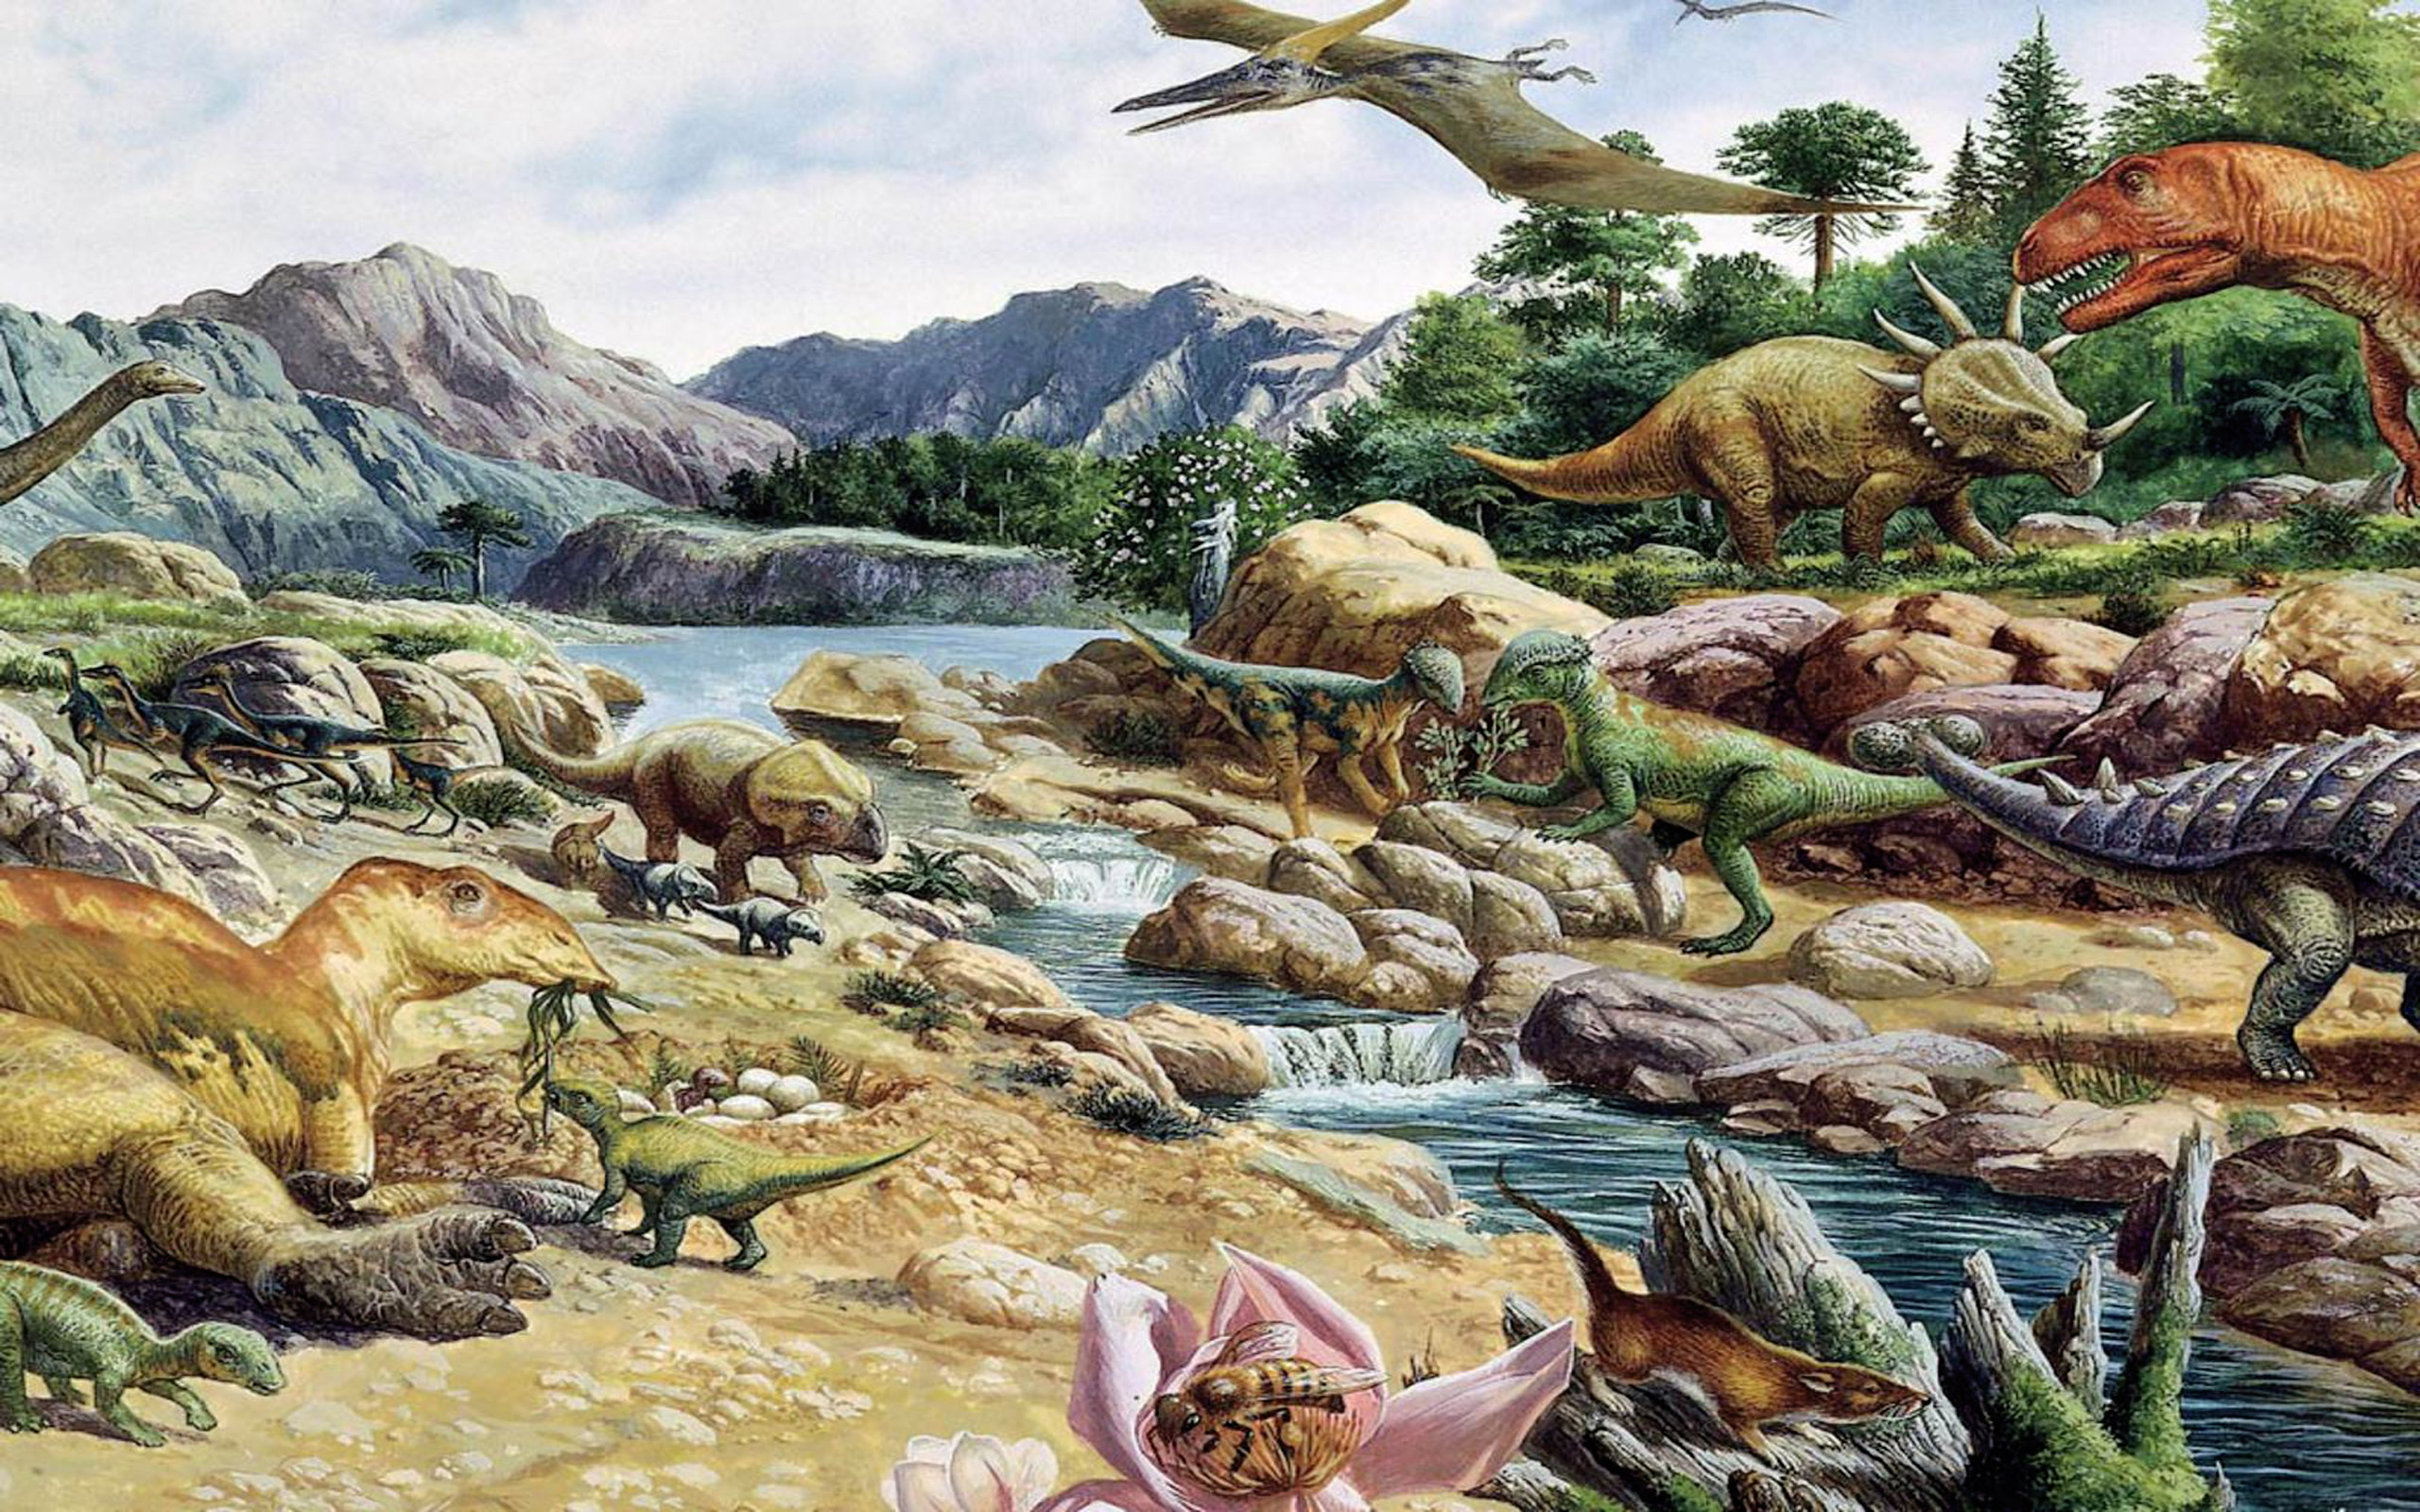 100 млн лет назад какая эра. Юрский период мезозойской эры. Меловой период мезозойской эры. Меловой период мезозойской эры динозавры. Мезозойская Эра Юрский период растения.